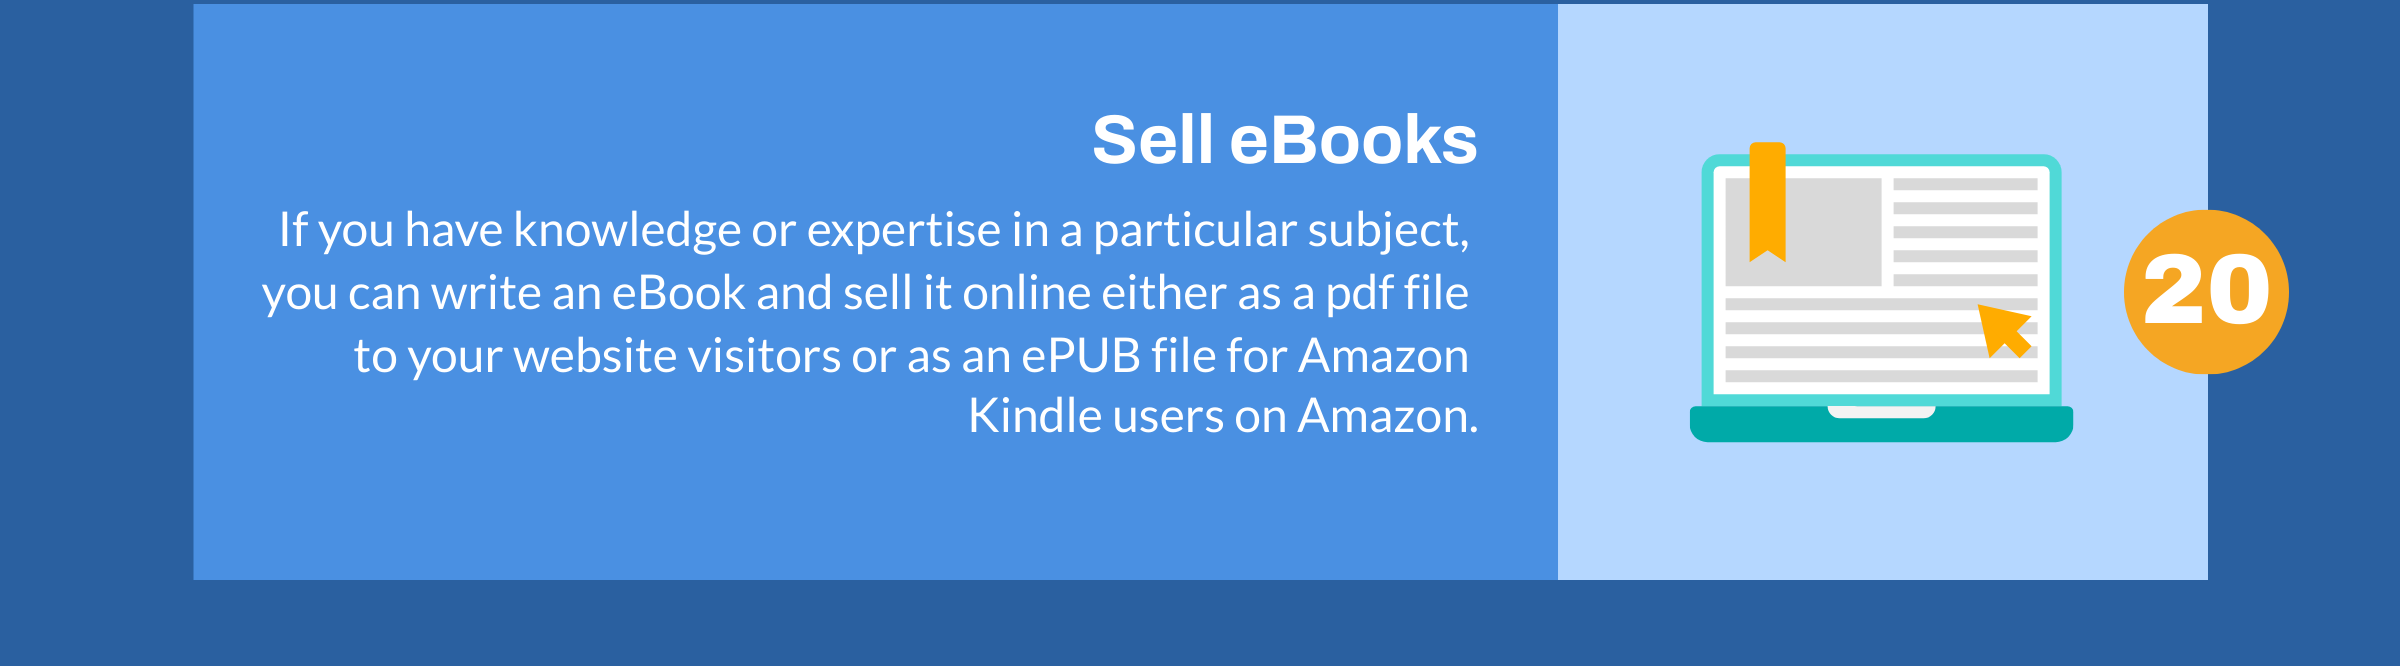 Negócios de venda de e-books